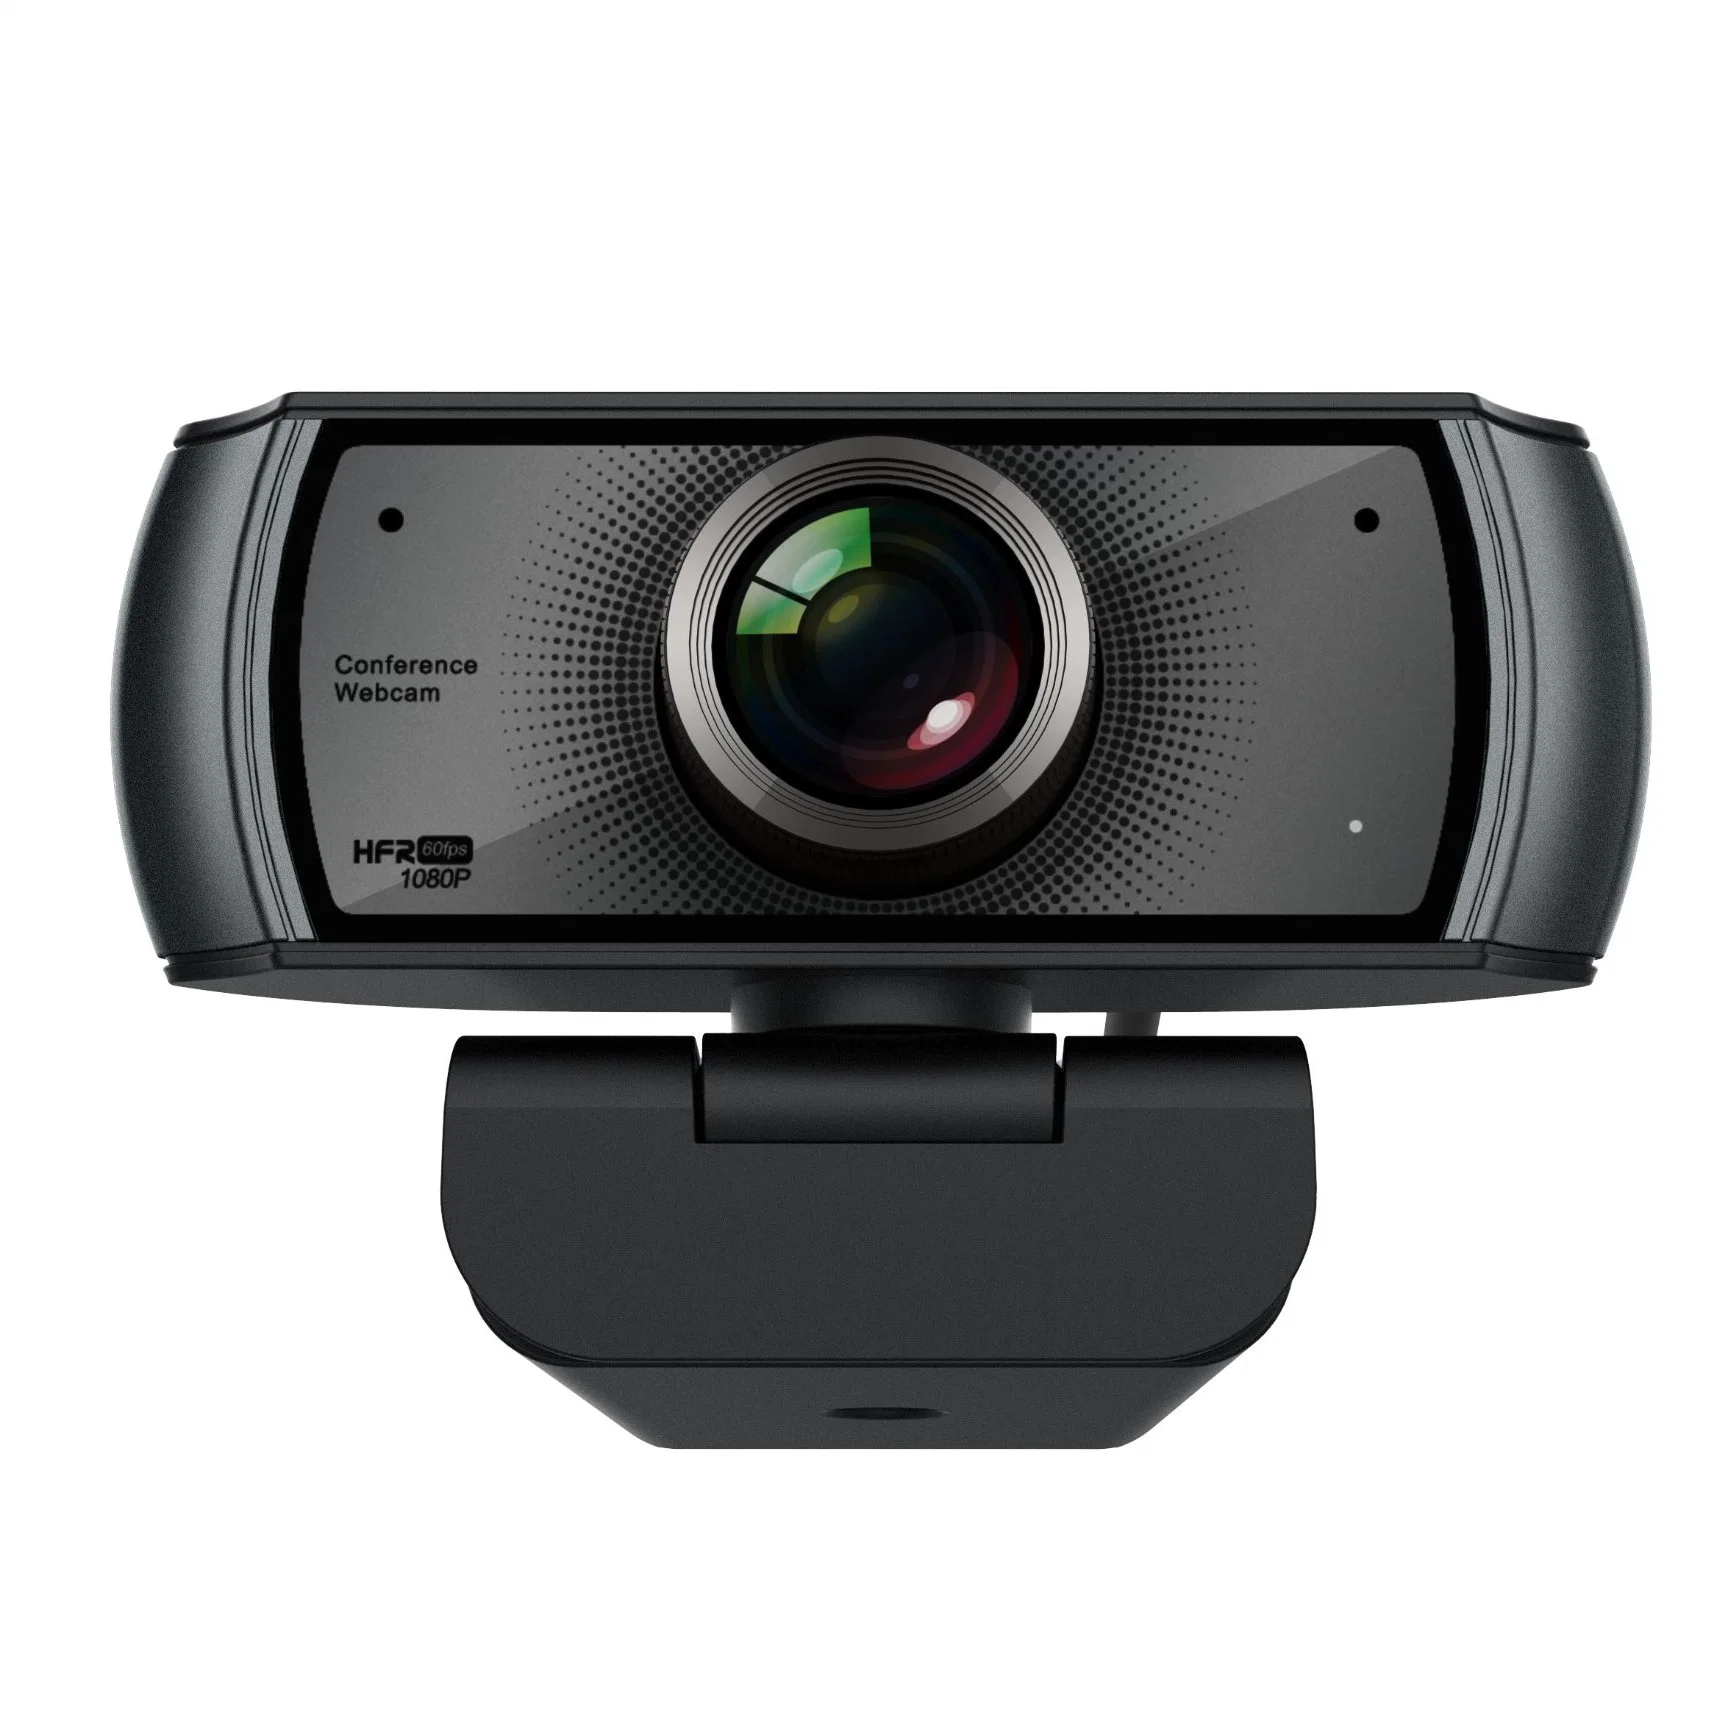 Chian prix d'usine Nouveau design Full HD 1080p portable USB Webcam PC camera avec lentille Wide-Angle 120 degrés pour la vidéo conférence